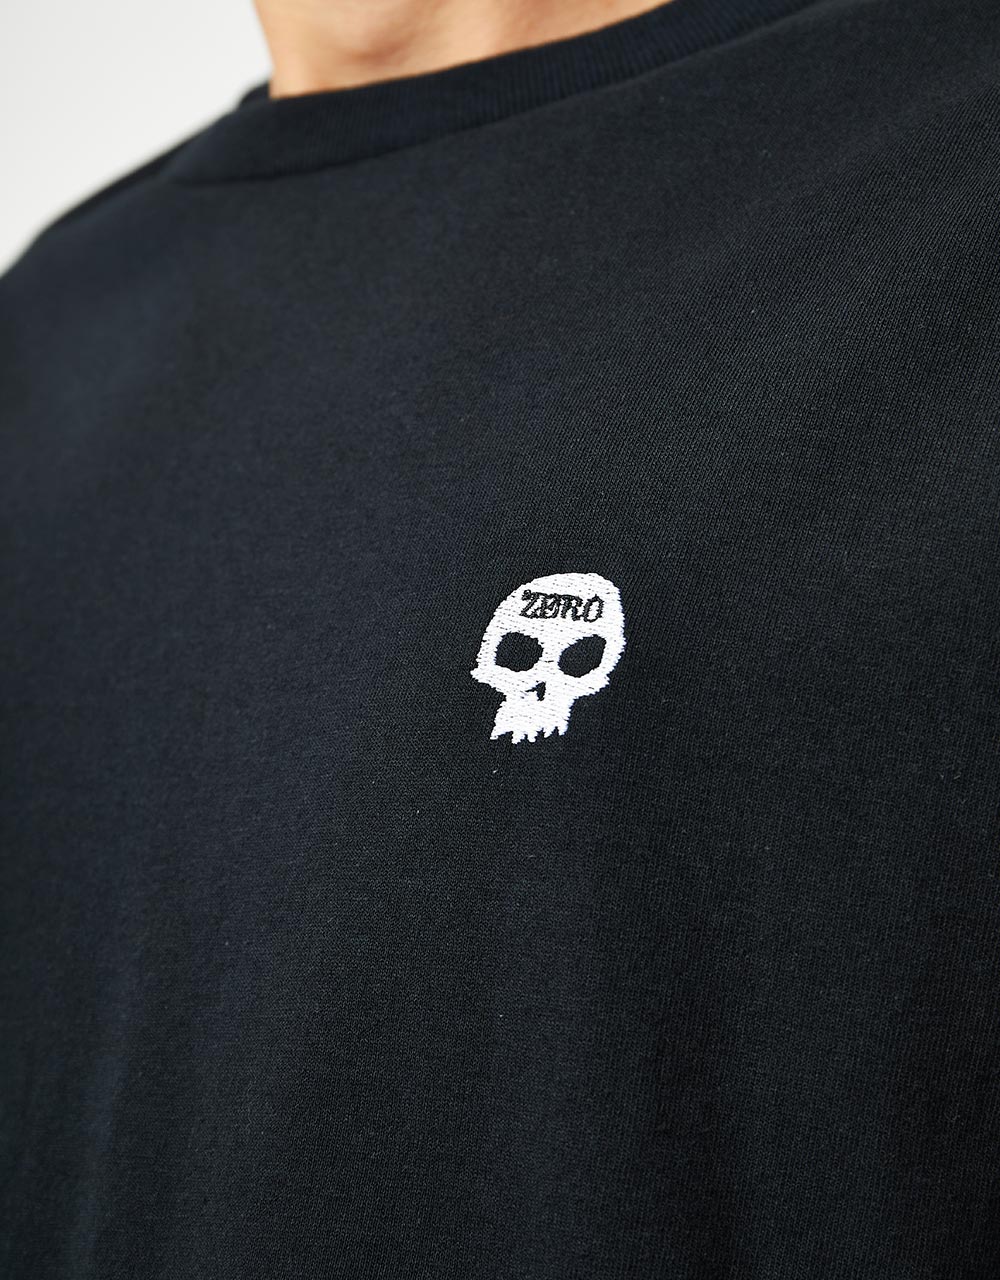 Zero Single Skull Embroidered T-Shirt - Black/White